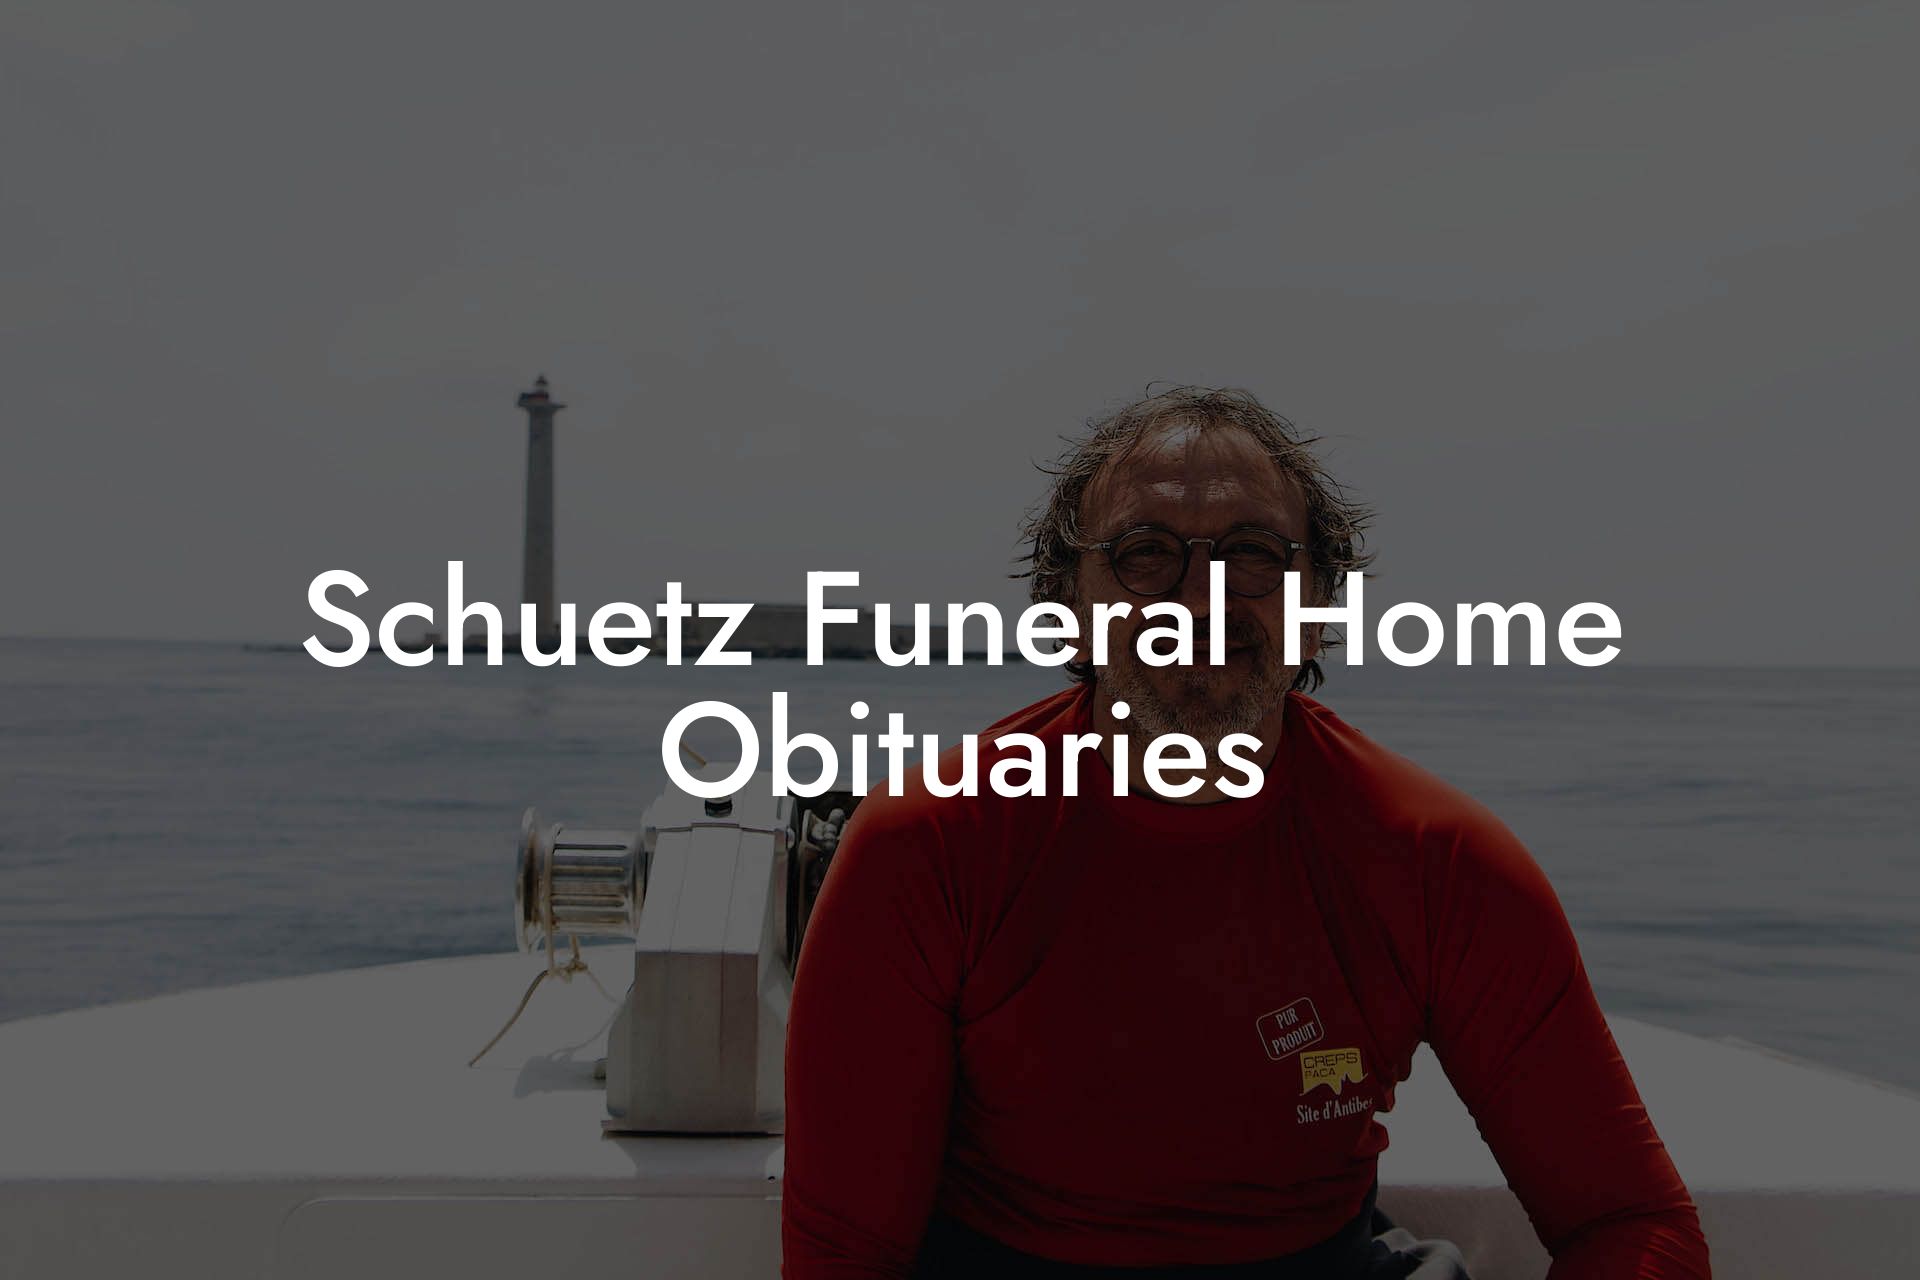 Schuetz Funeral Home Obituaries